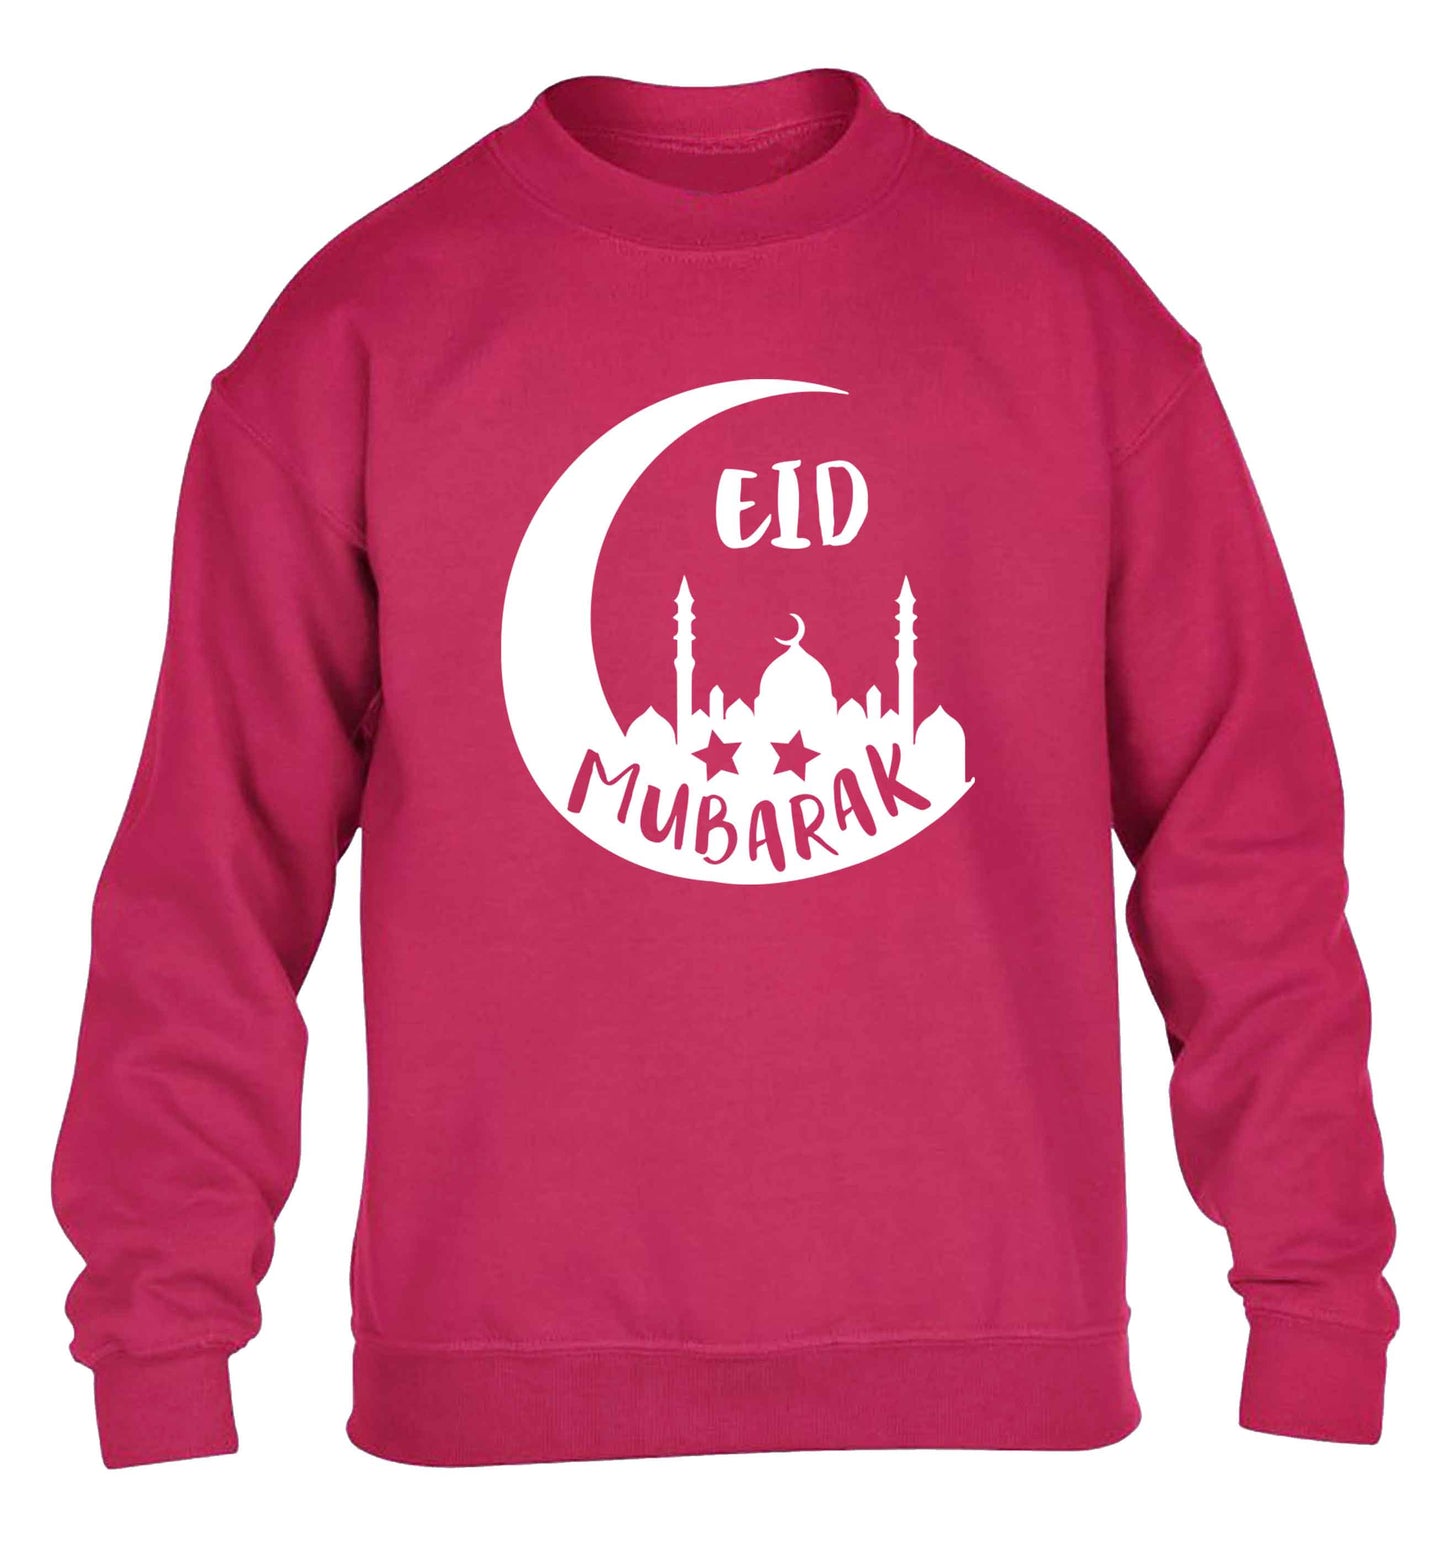 Eid mubarak children's pink sweater 12-13 Years